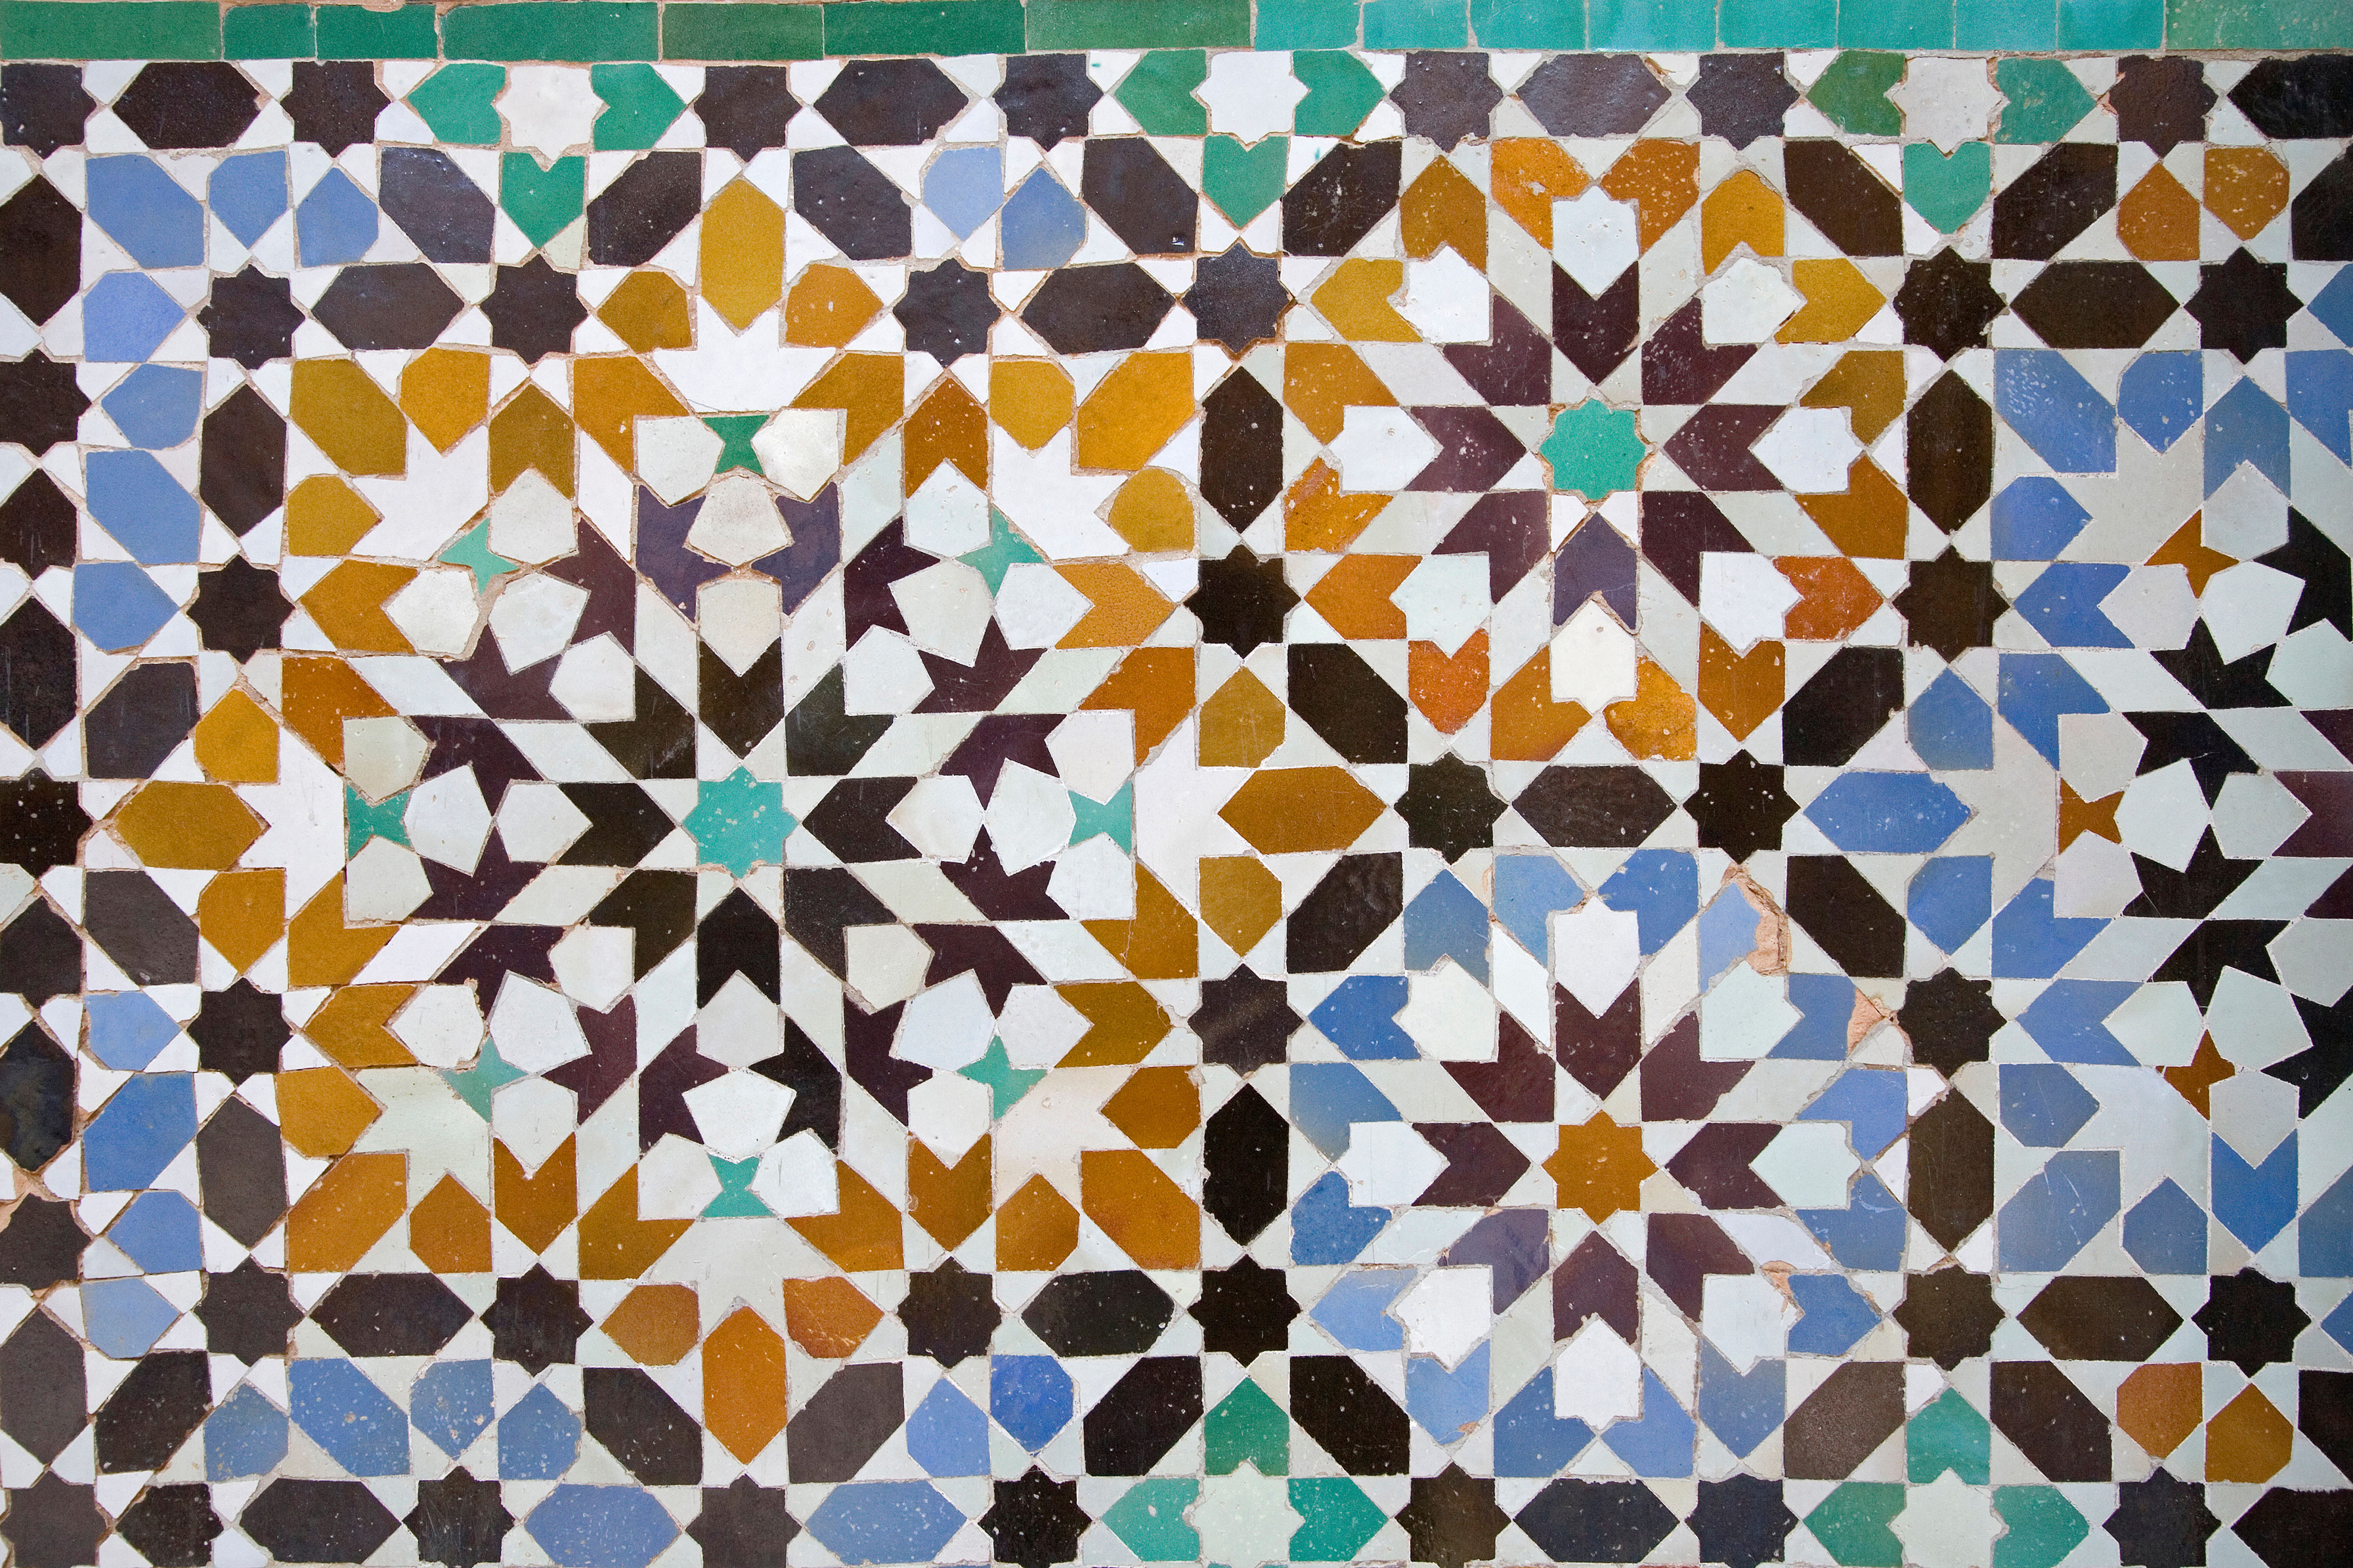 Mosaic tiles (Alamy/PA)